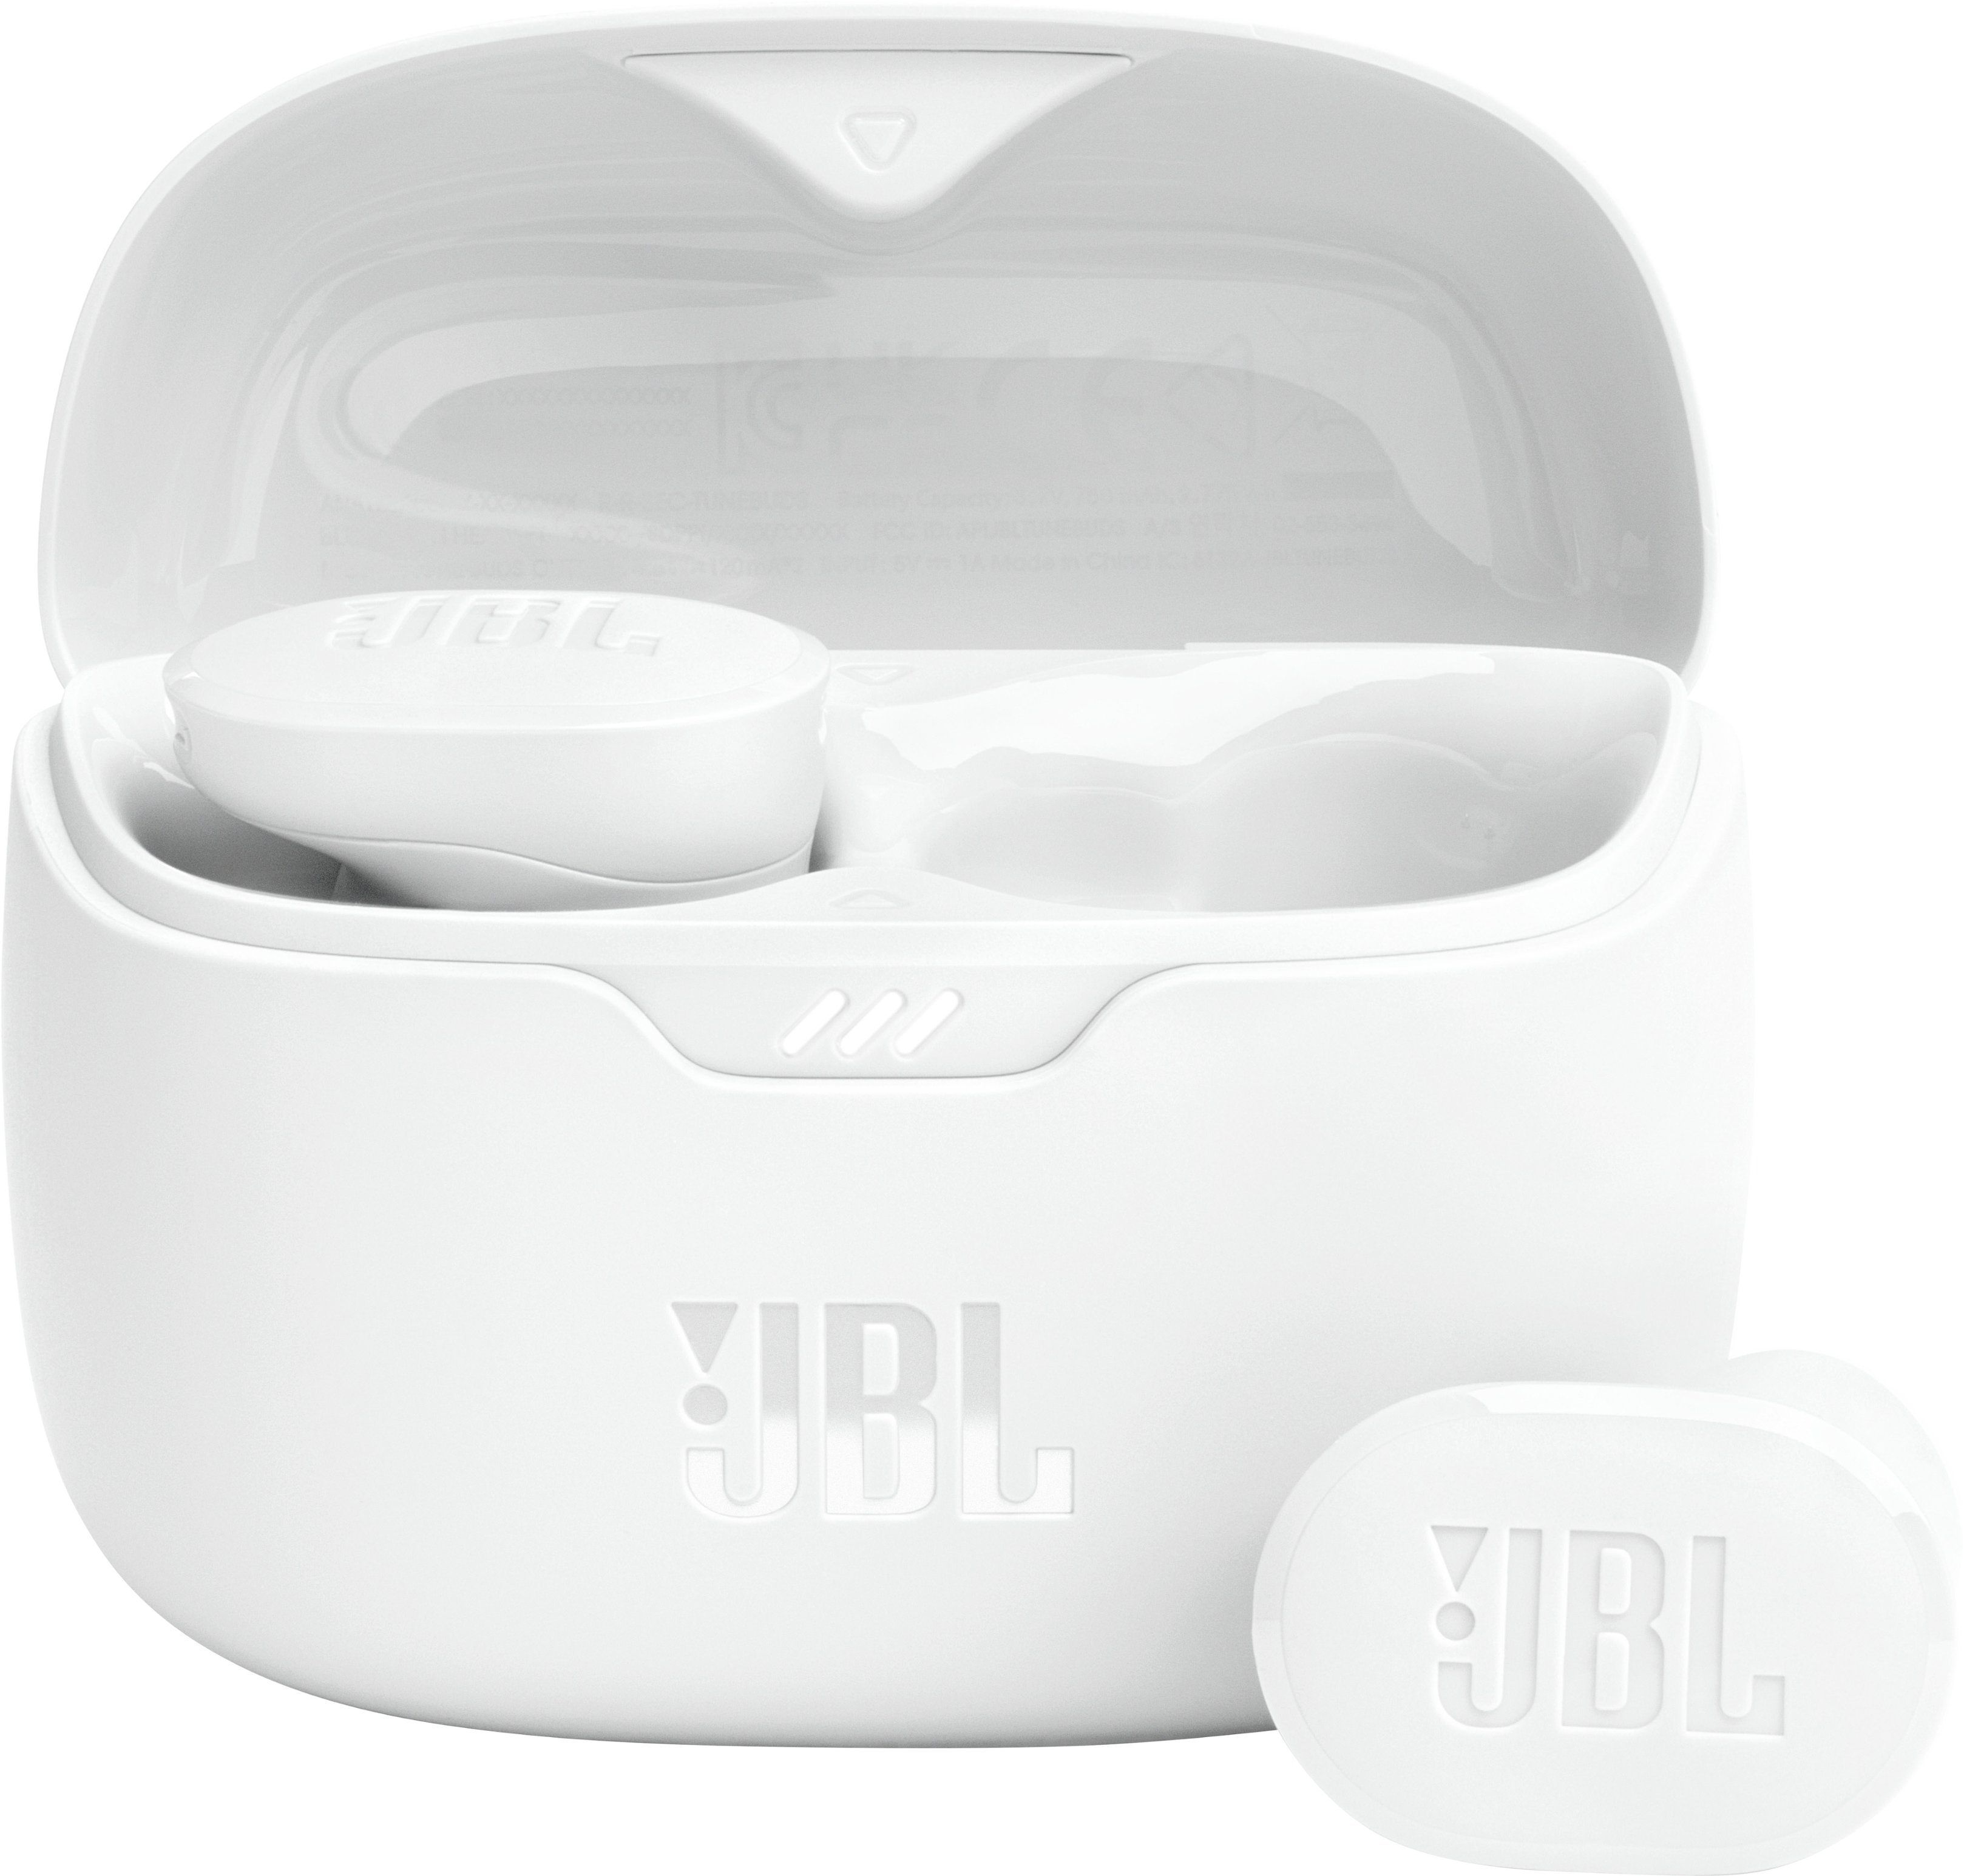 Avis sur les écouteurs JBL Tune Buds : Test et analyse complète